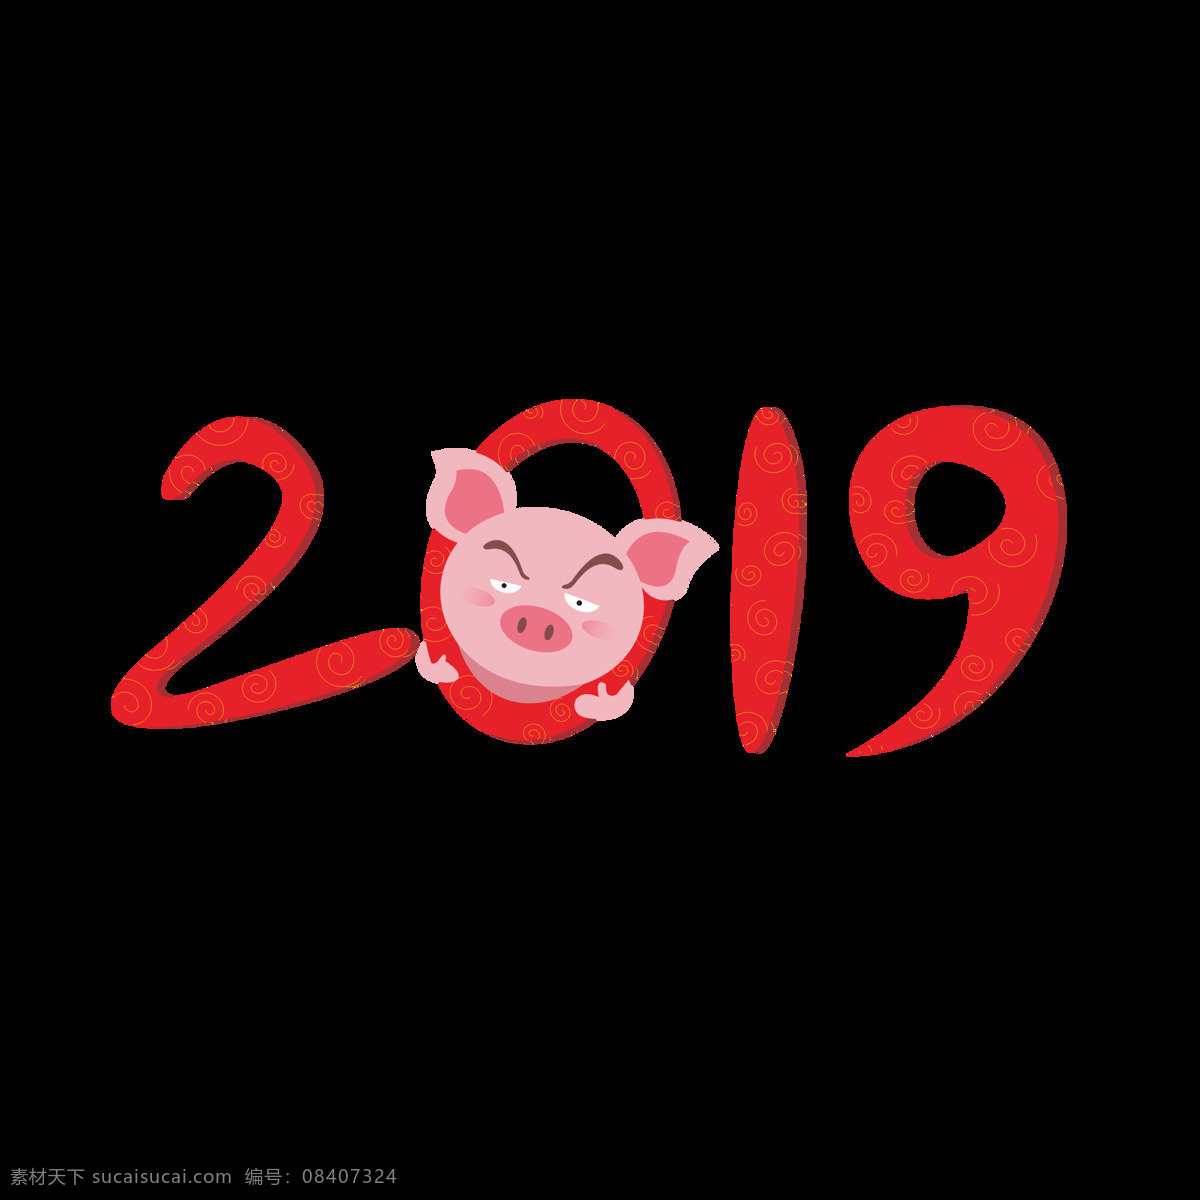 2019 猪年 艺术 字 元素 红色 喜庆 字体设计 卡通猪 艺术字 2019猪年 2019新年